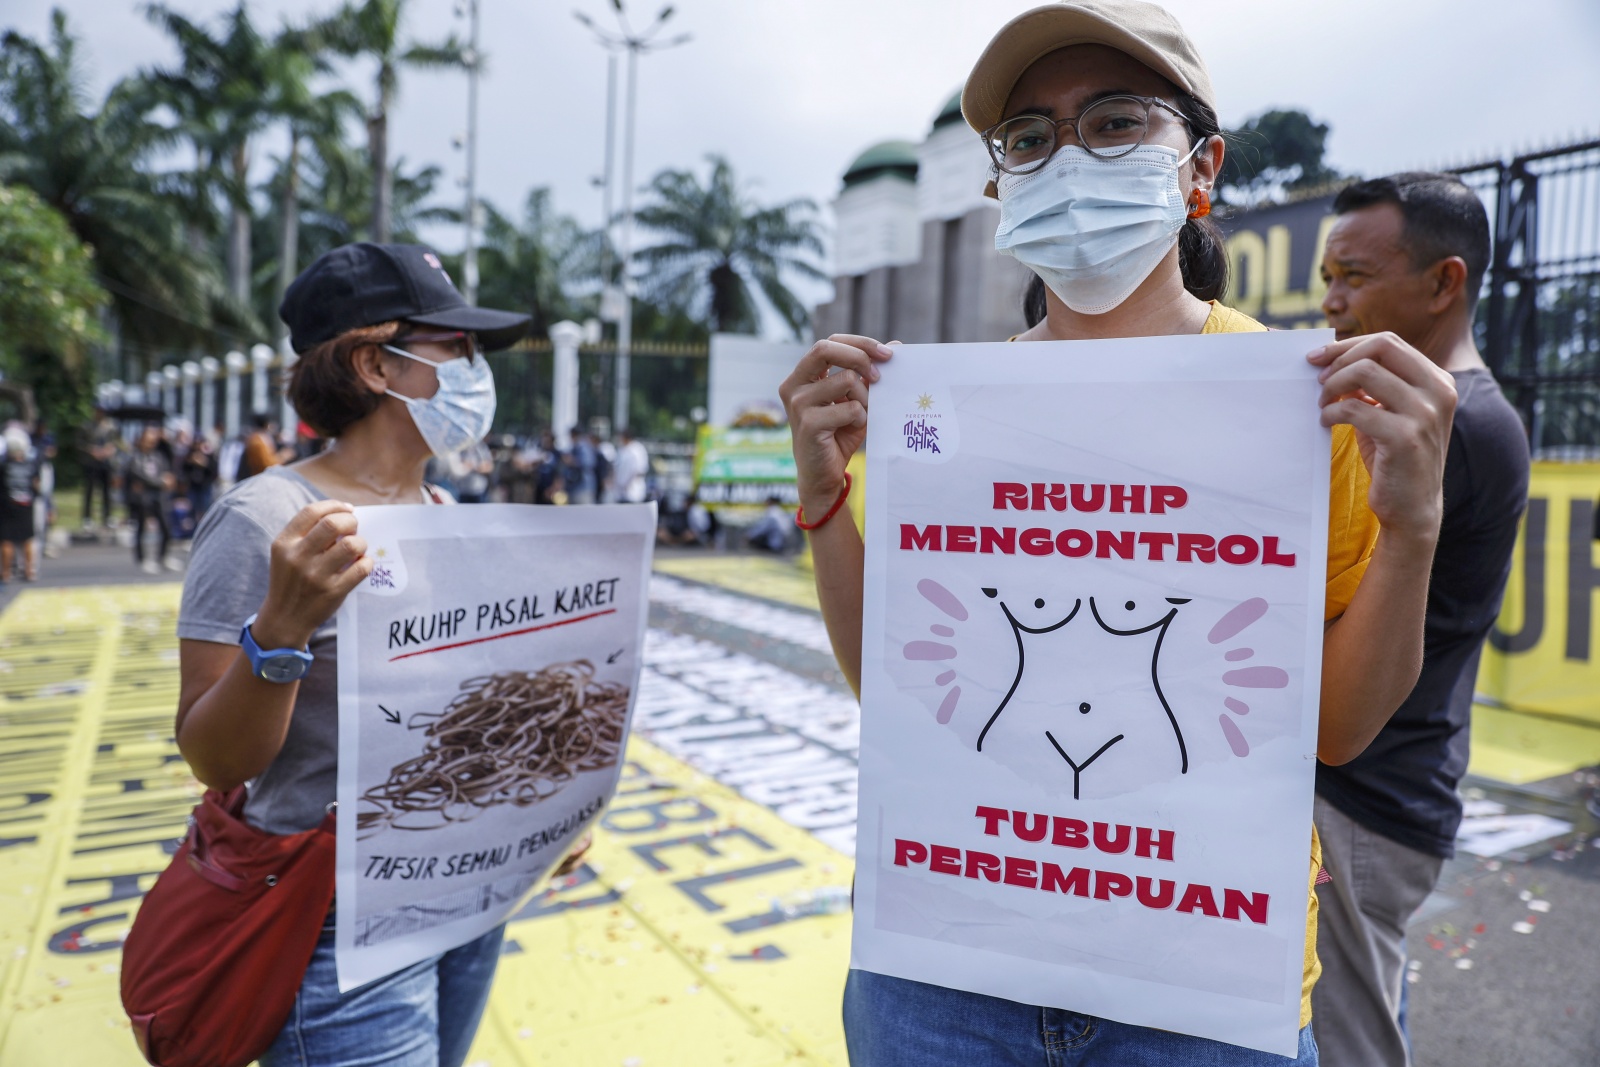 Visão Indonésia aprova lei que pune com pena de prisão sexo fora do casamento